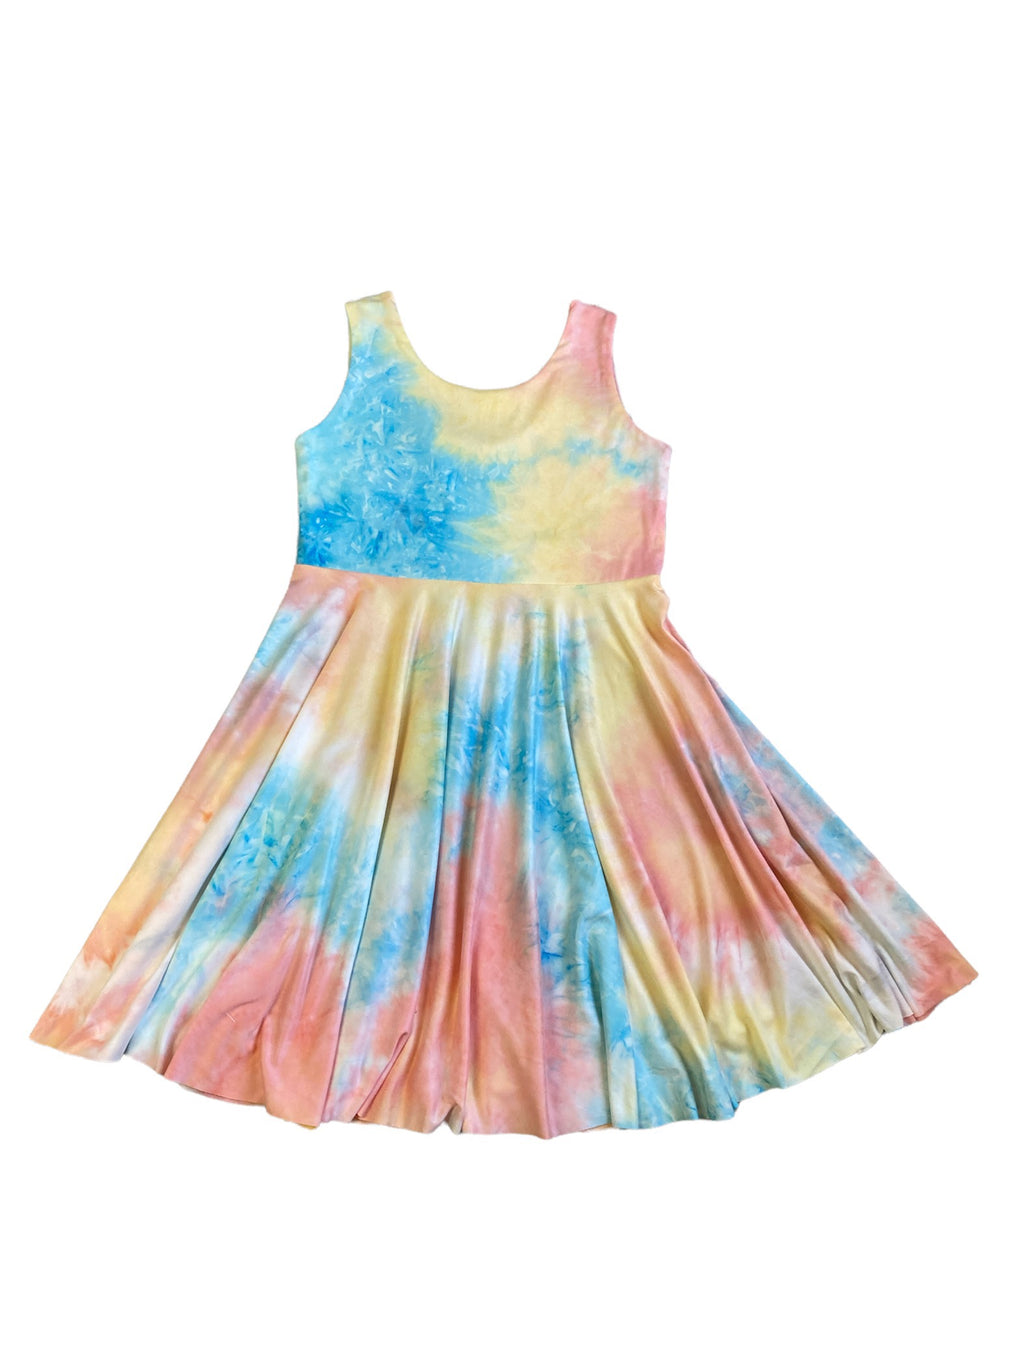 Kids Twirly Tank Dress in Pastel Tie Dye - Size 8